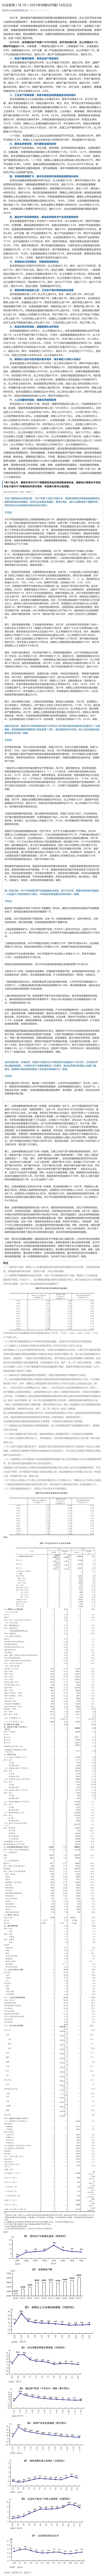 裁剪-行业政策 _ ↑8_1%！2021年中国GDP超114万亿元.jpg